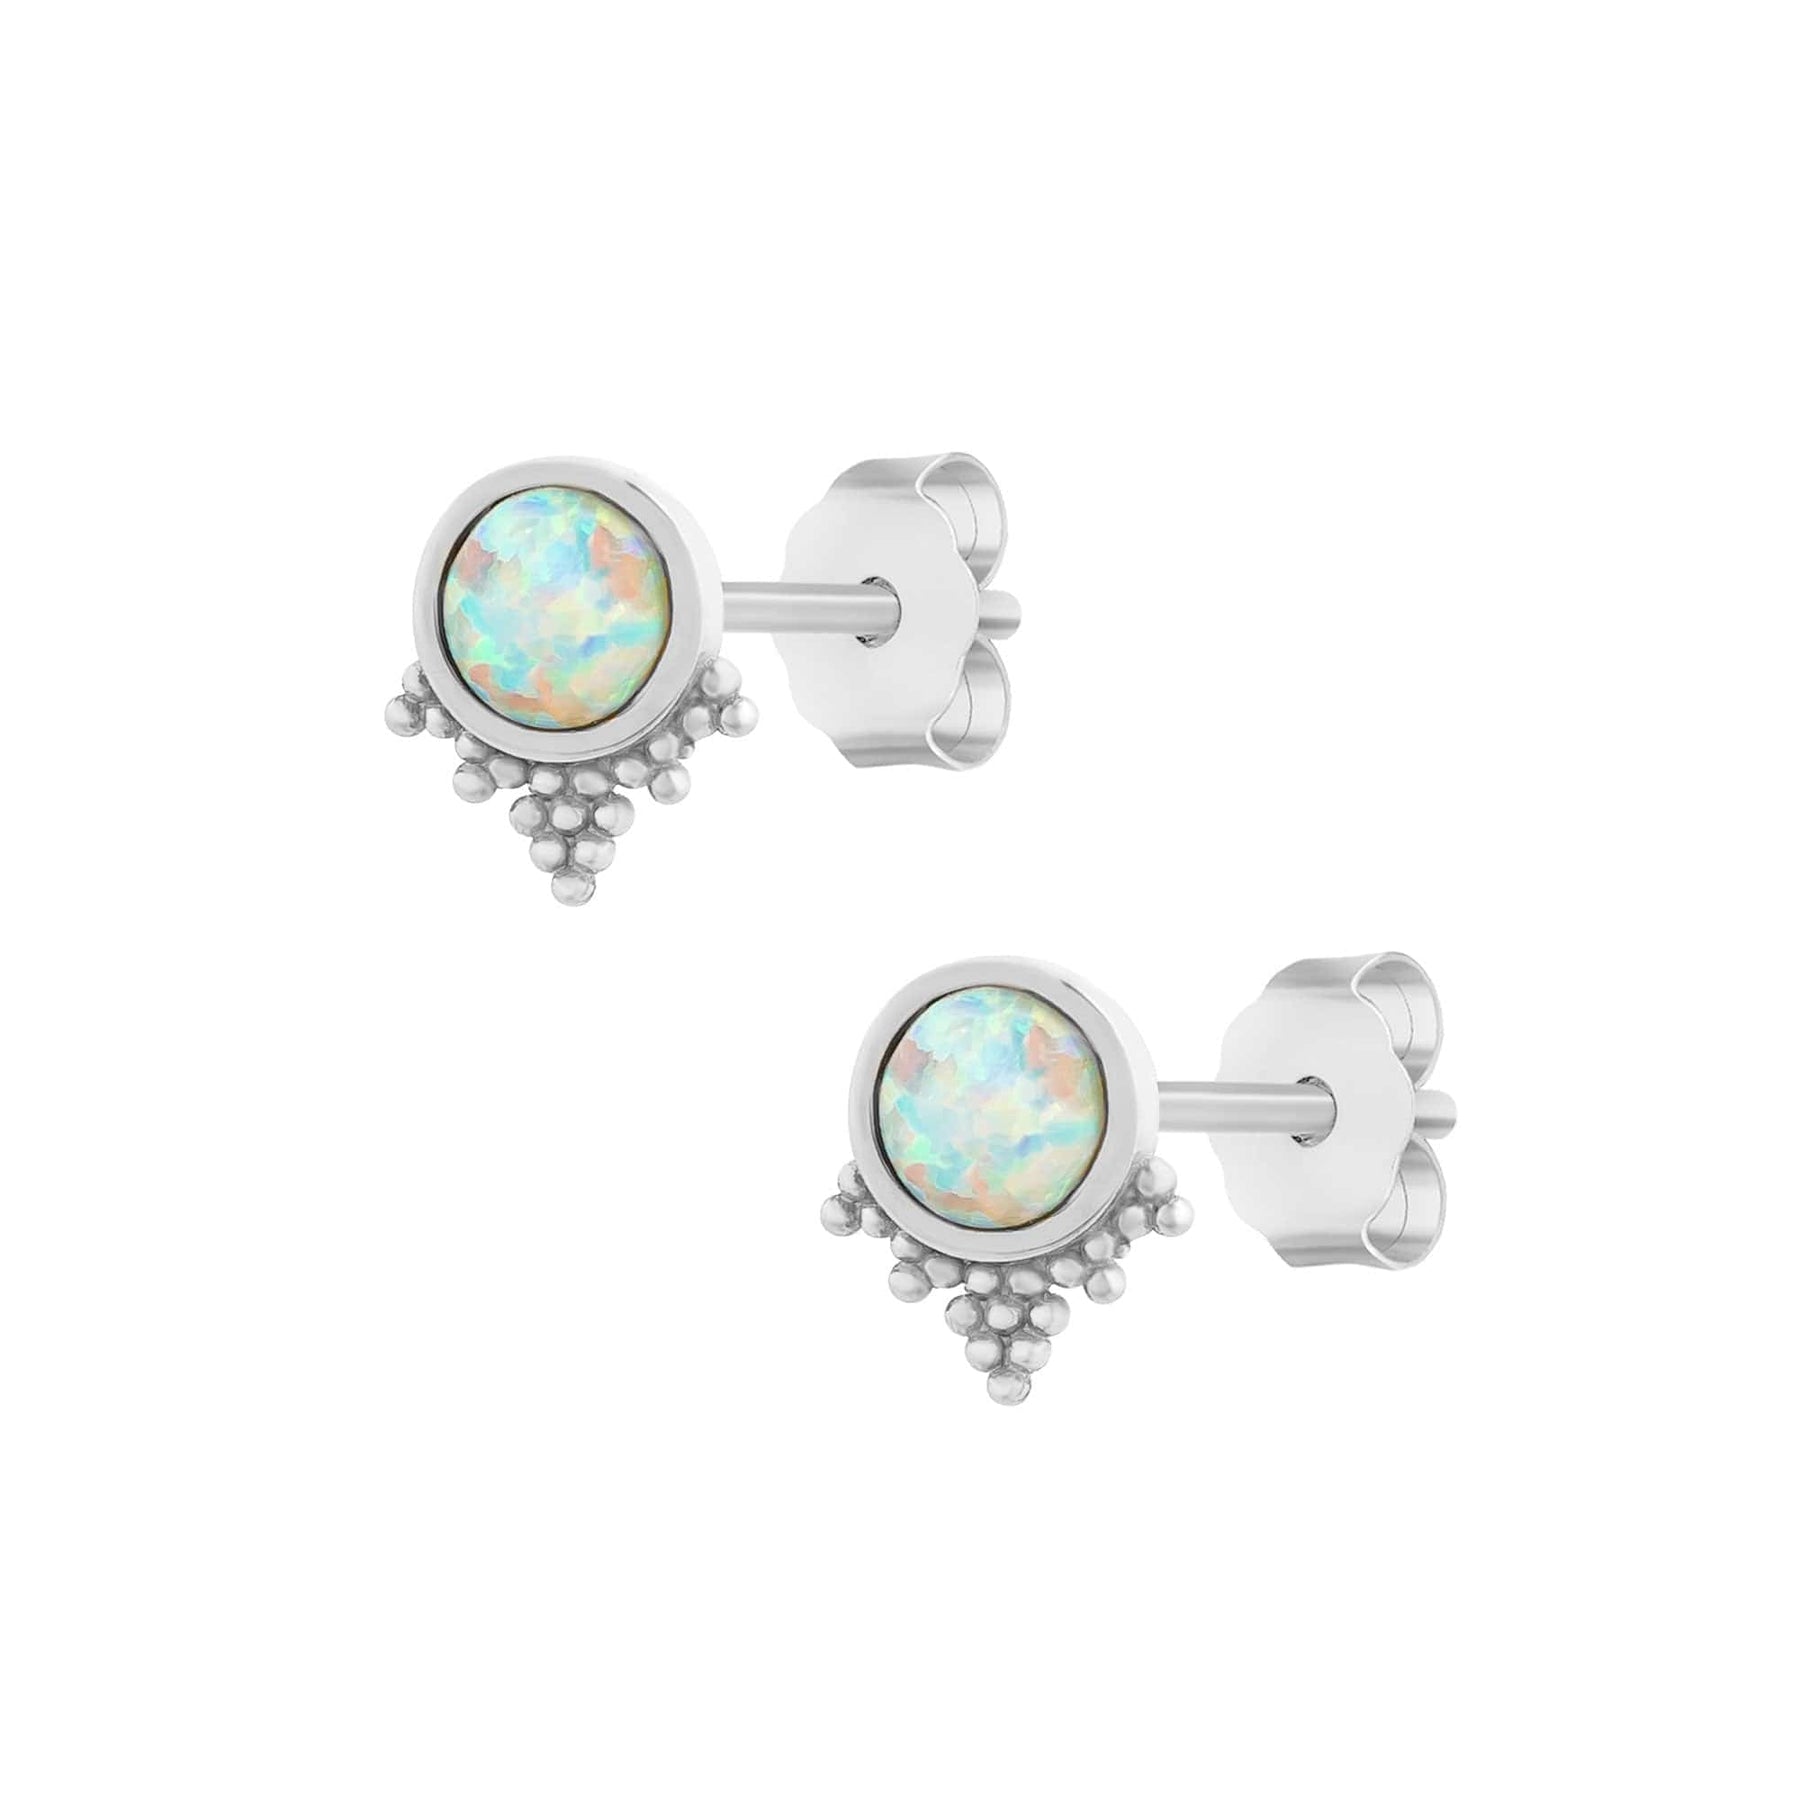 Bohomoon Stainless Steel Sammie Opal Stud Earrings